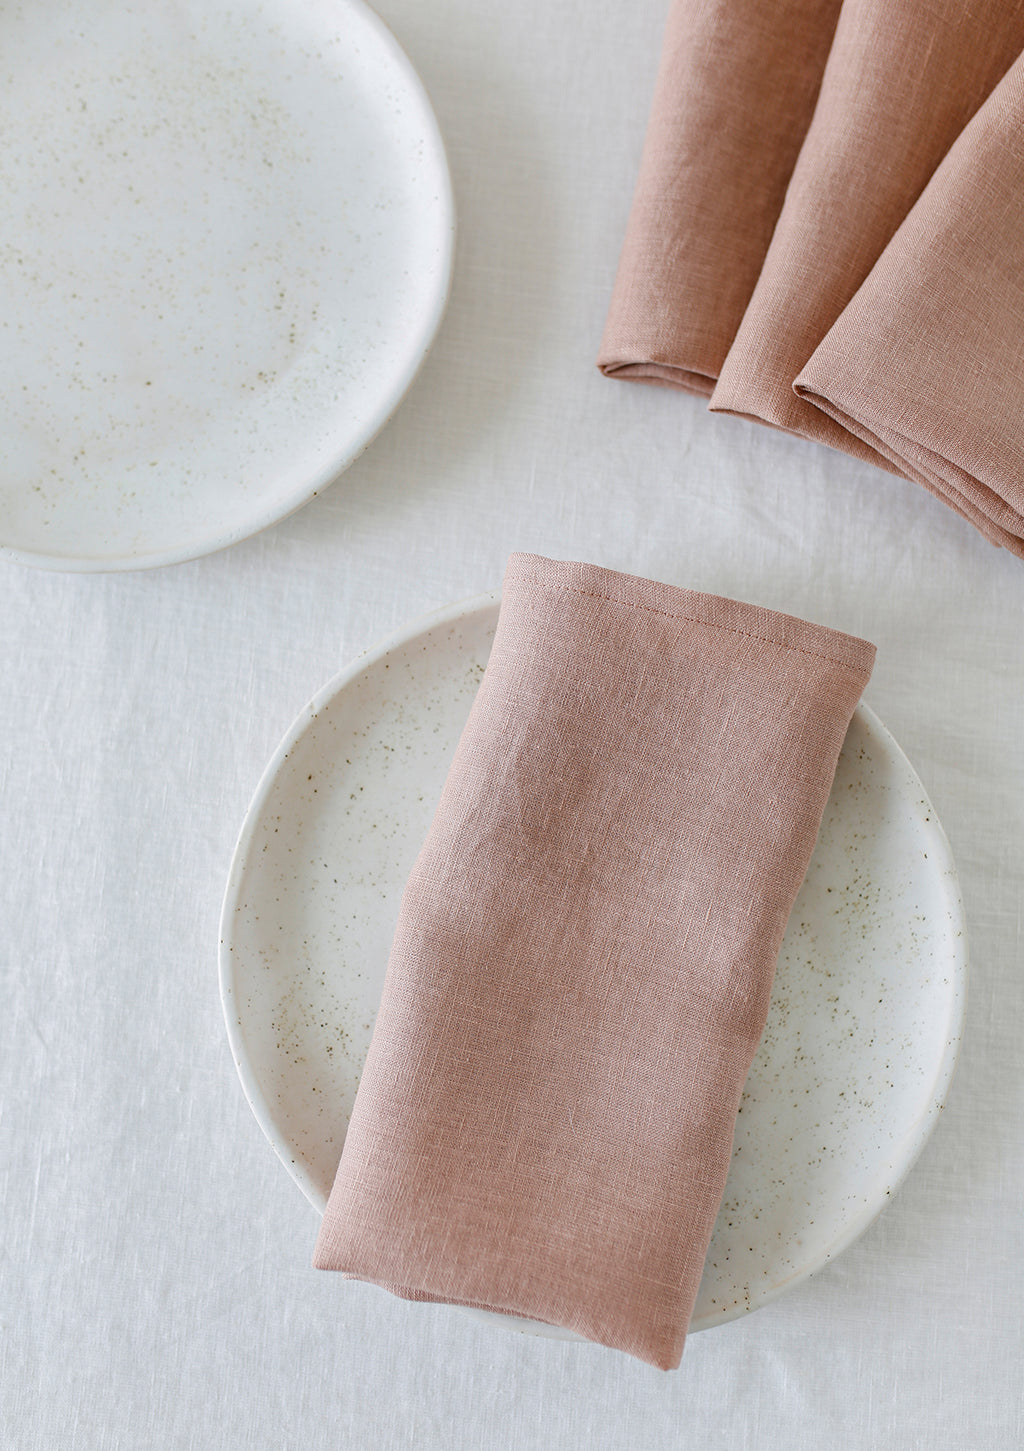 Bulk Linen Napkin, Washed Soft Natural Linen Napkin, Dinner Napkin